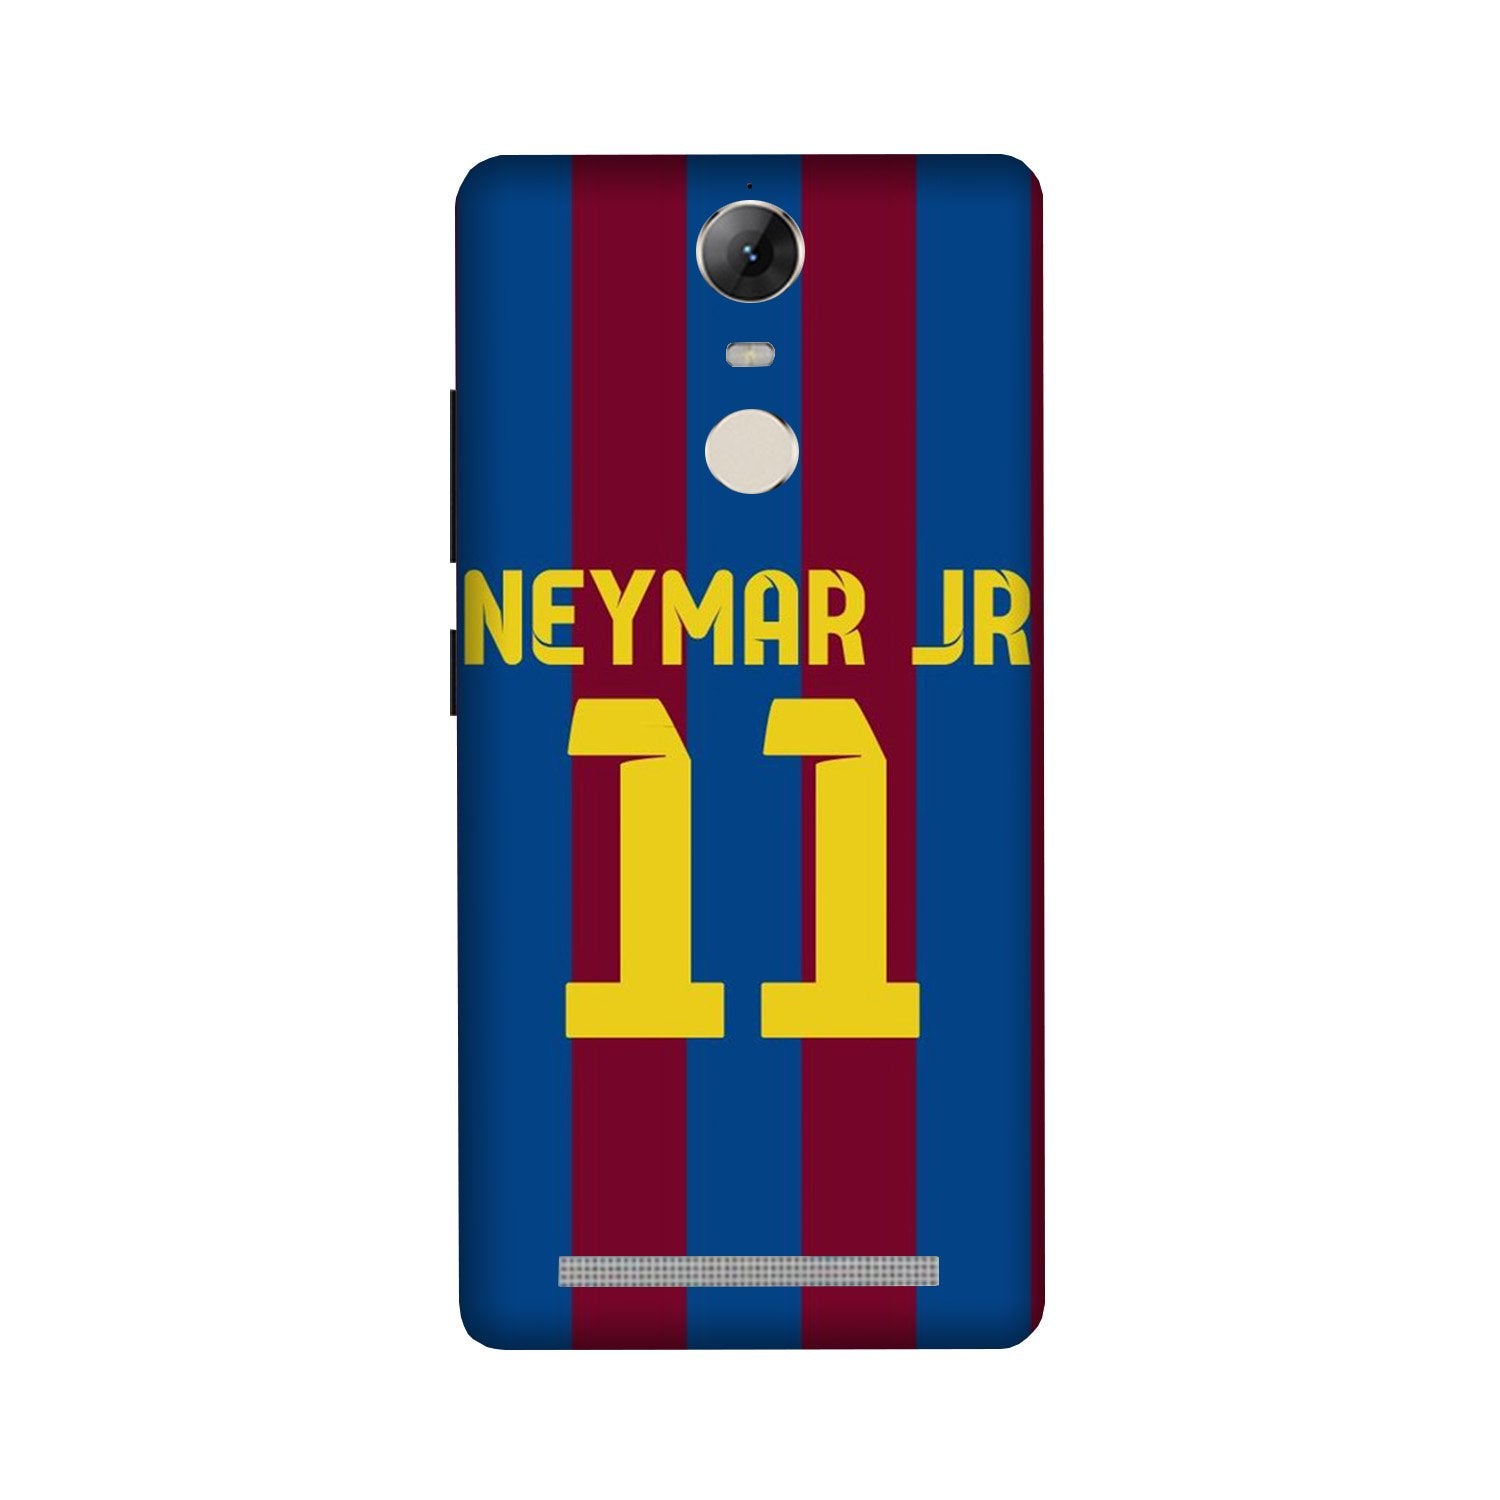 Neymar Jr Case for Lenovo Vibe K5 Note(Design - 162)